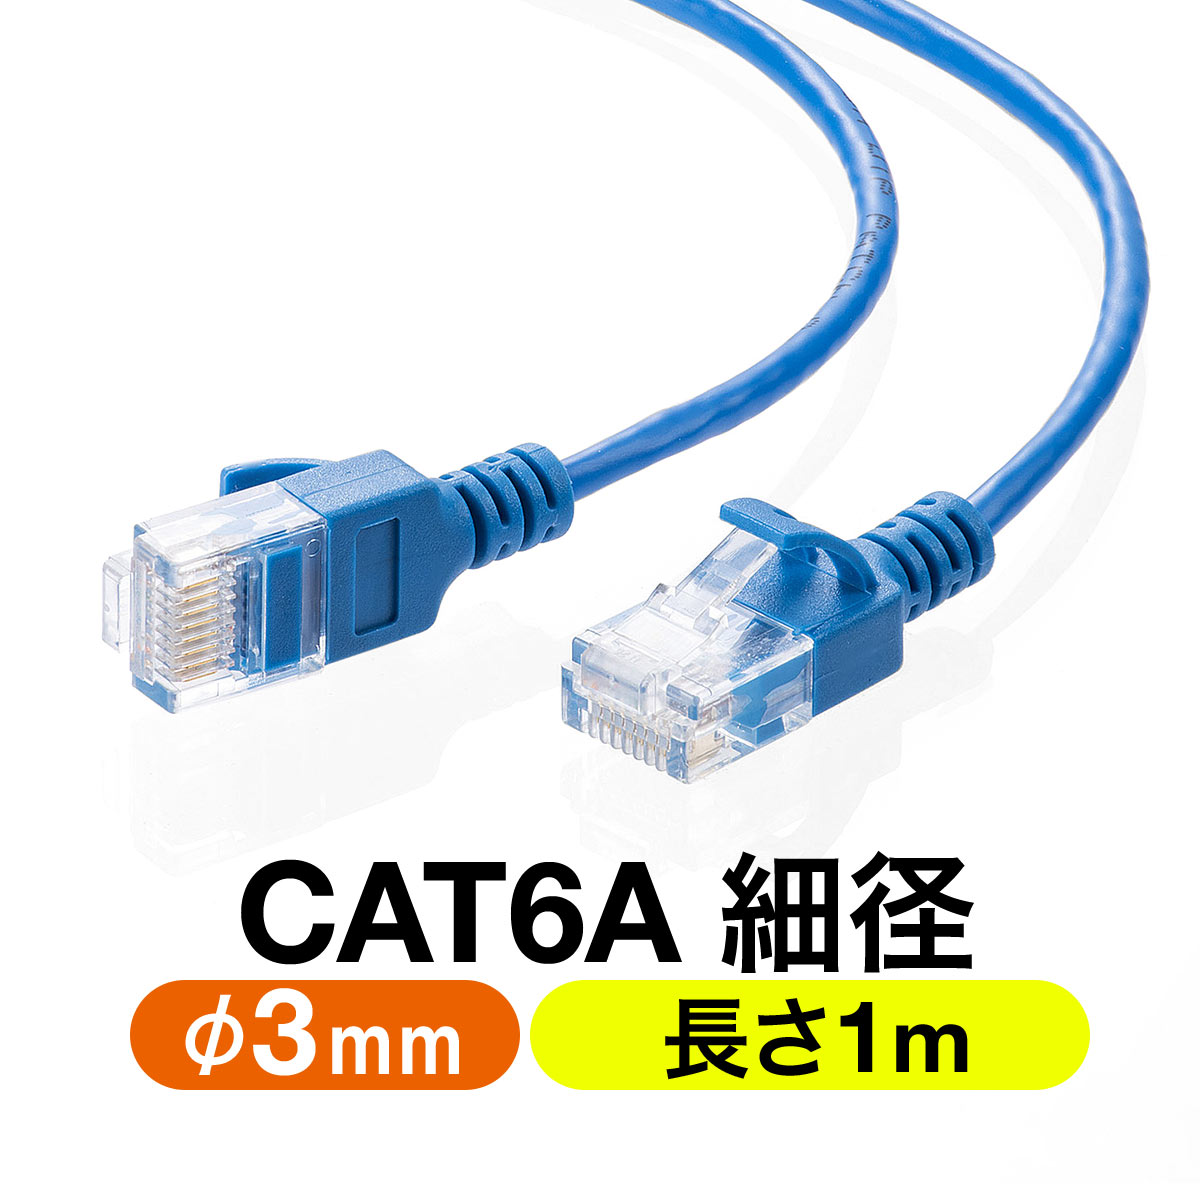 ツメ折れ防止 細径LANケーブル CAT6A 1m カテゴリ6A 爪折れ防止カバー やわらかい ブルー